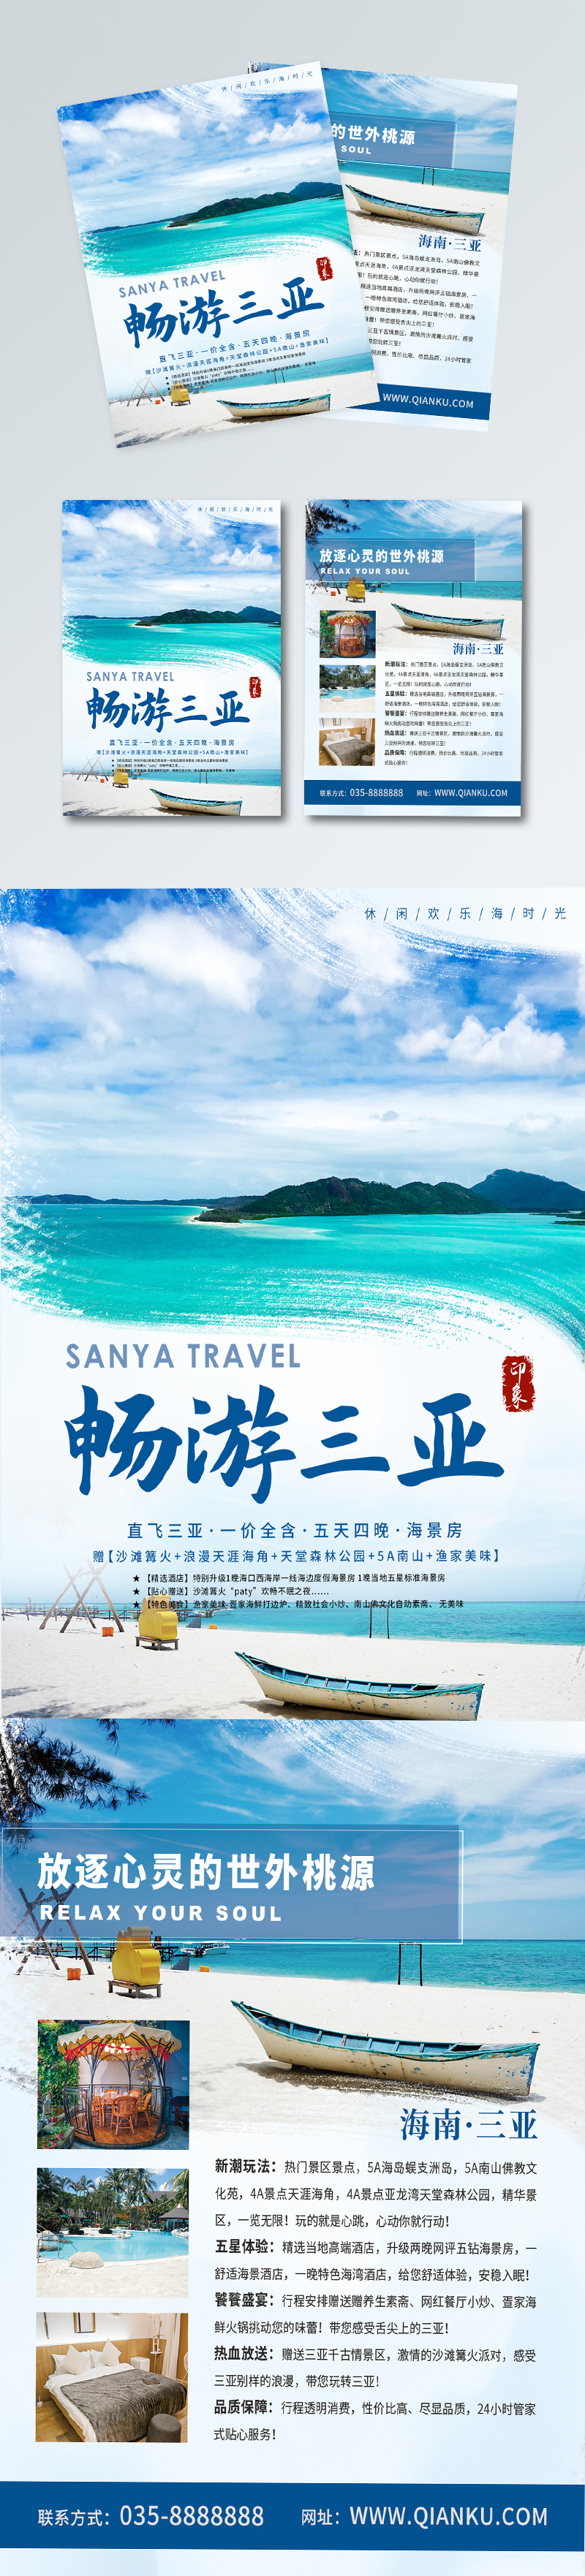 海南三亚旅游宣传广告图片